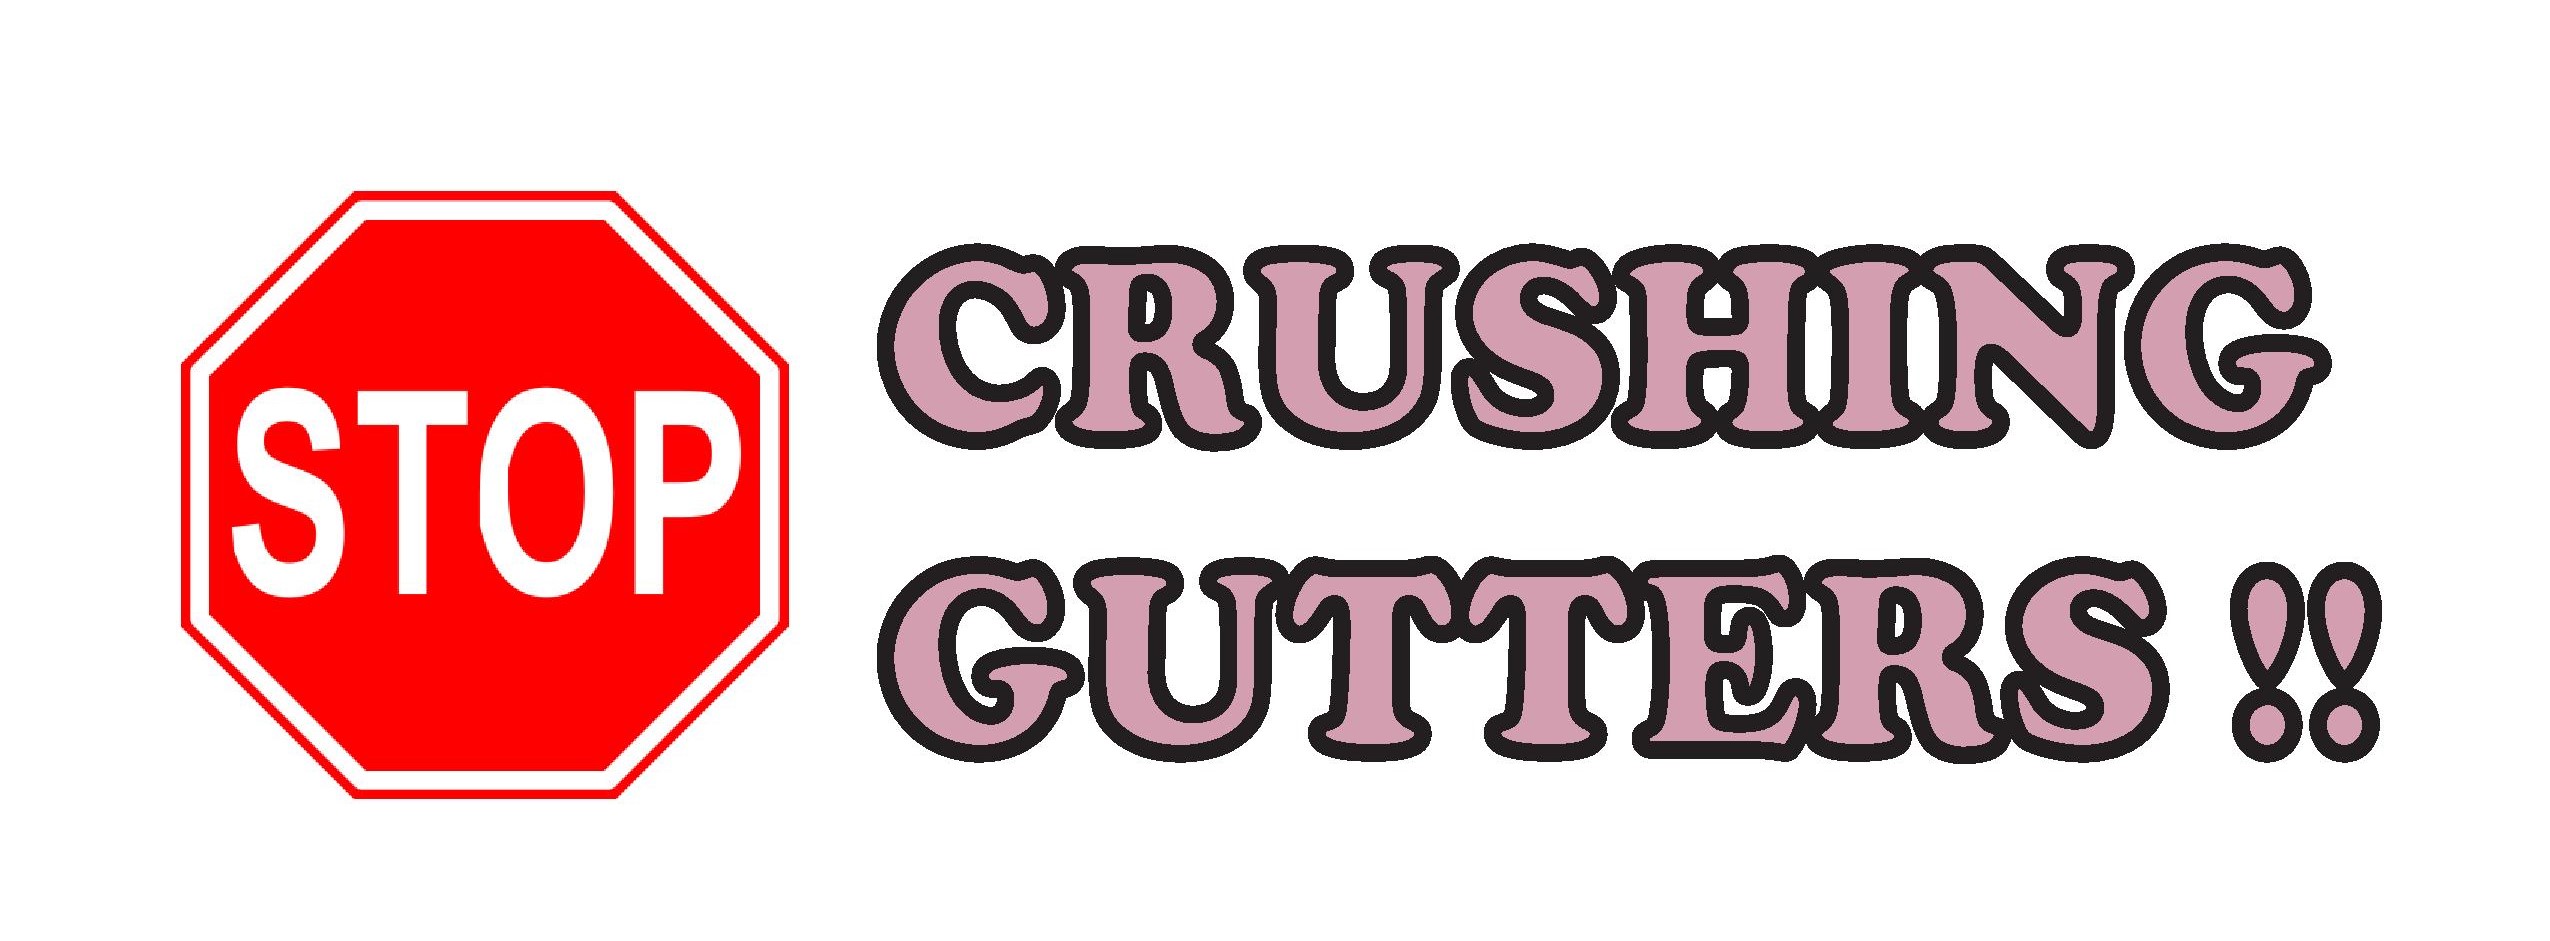 Stop Crushing Gutters